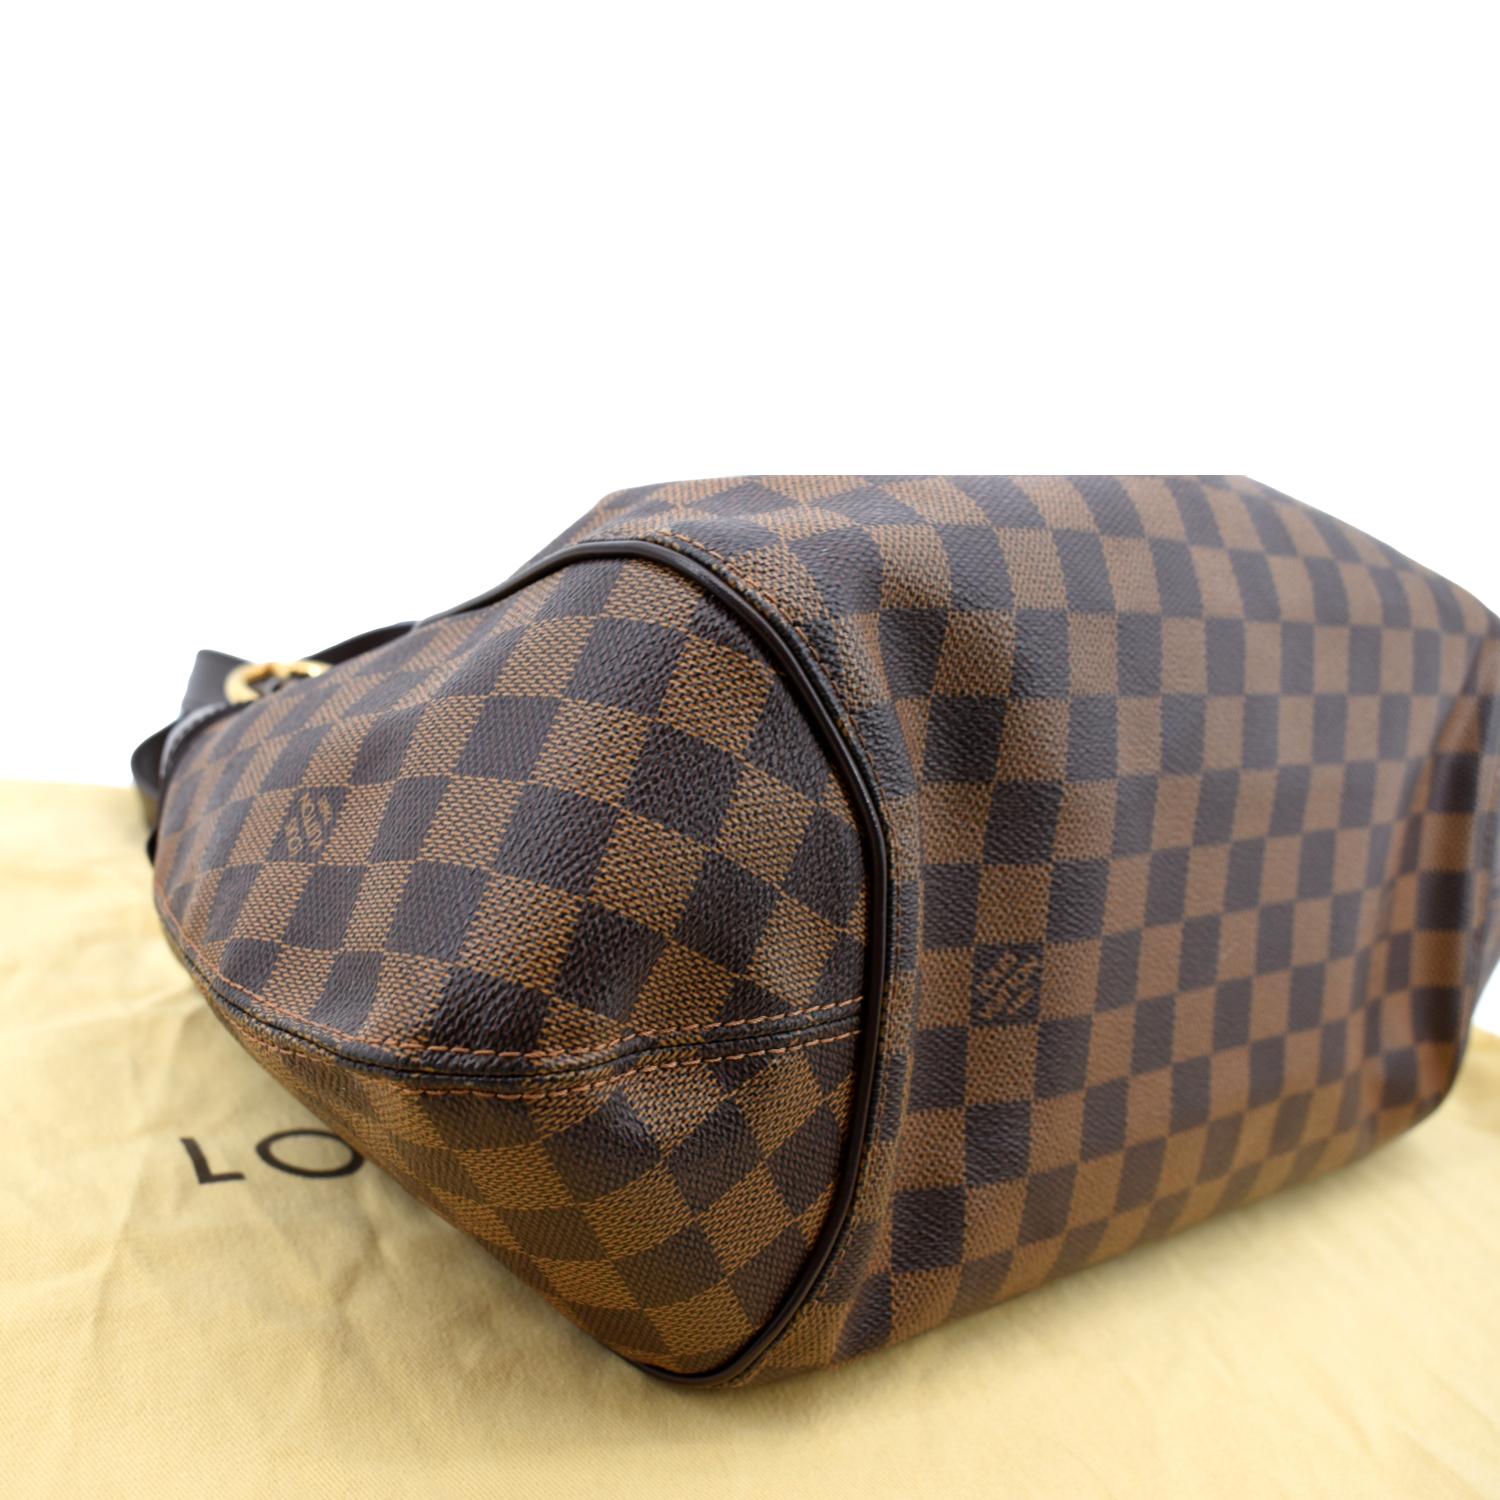 Louis Vuitton Damier Ebene Sistina GM Shoulder Bag For Sale at 1stDibs